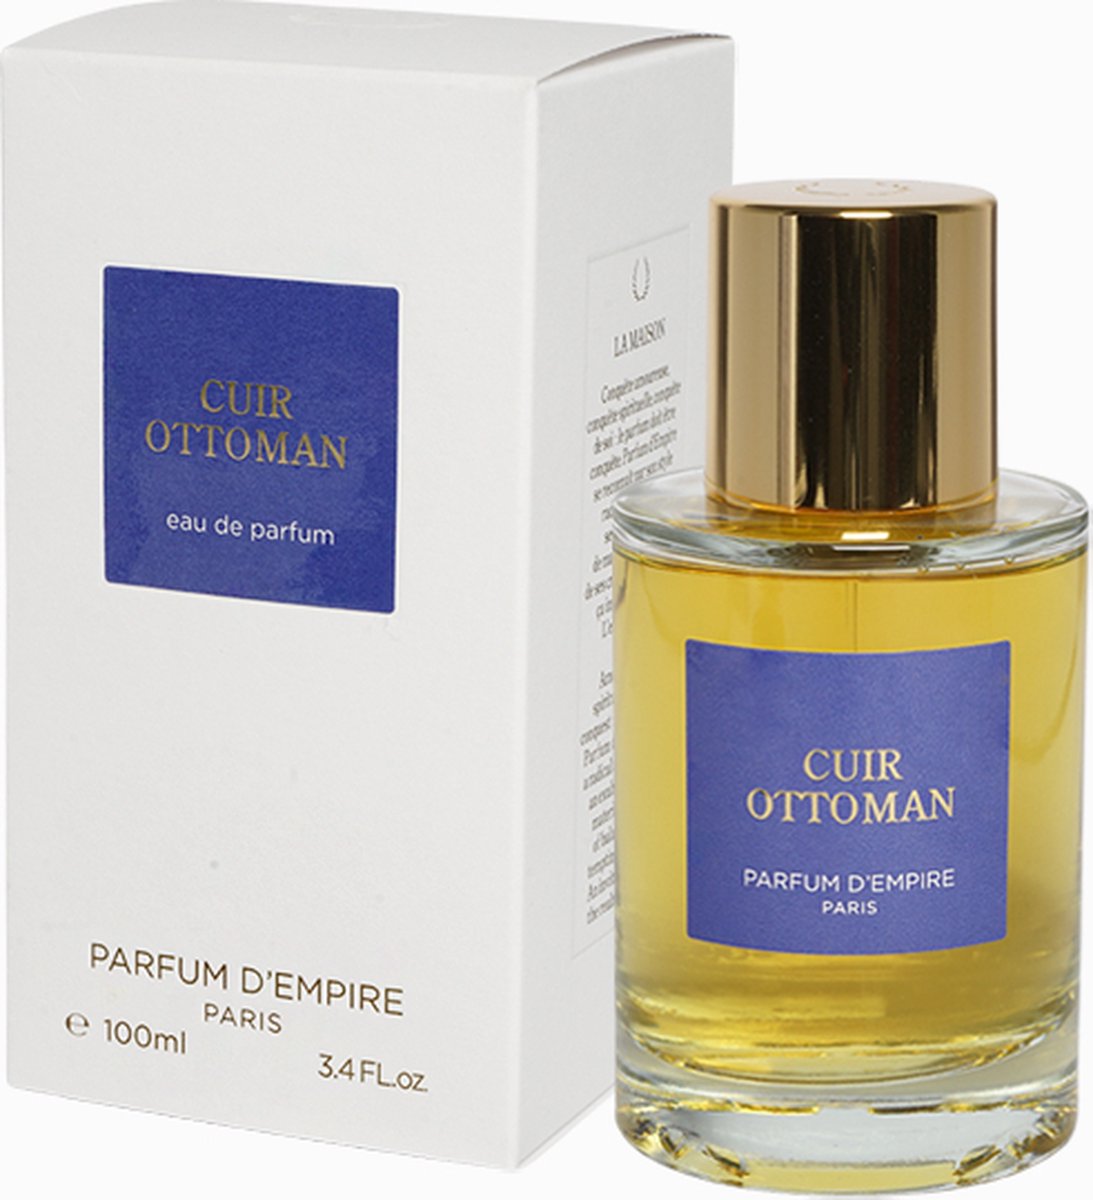 Parfum D'Empire - Cuir Ottoman Eau de Parfum - 100 ml - Unisex